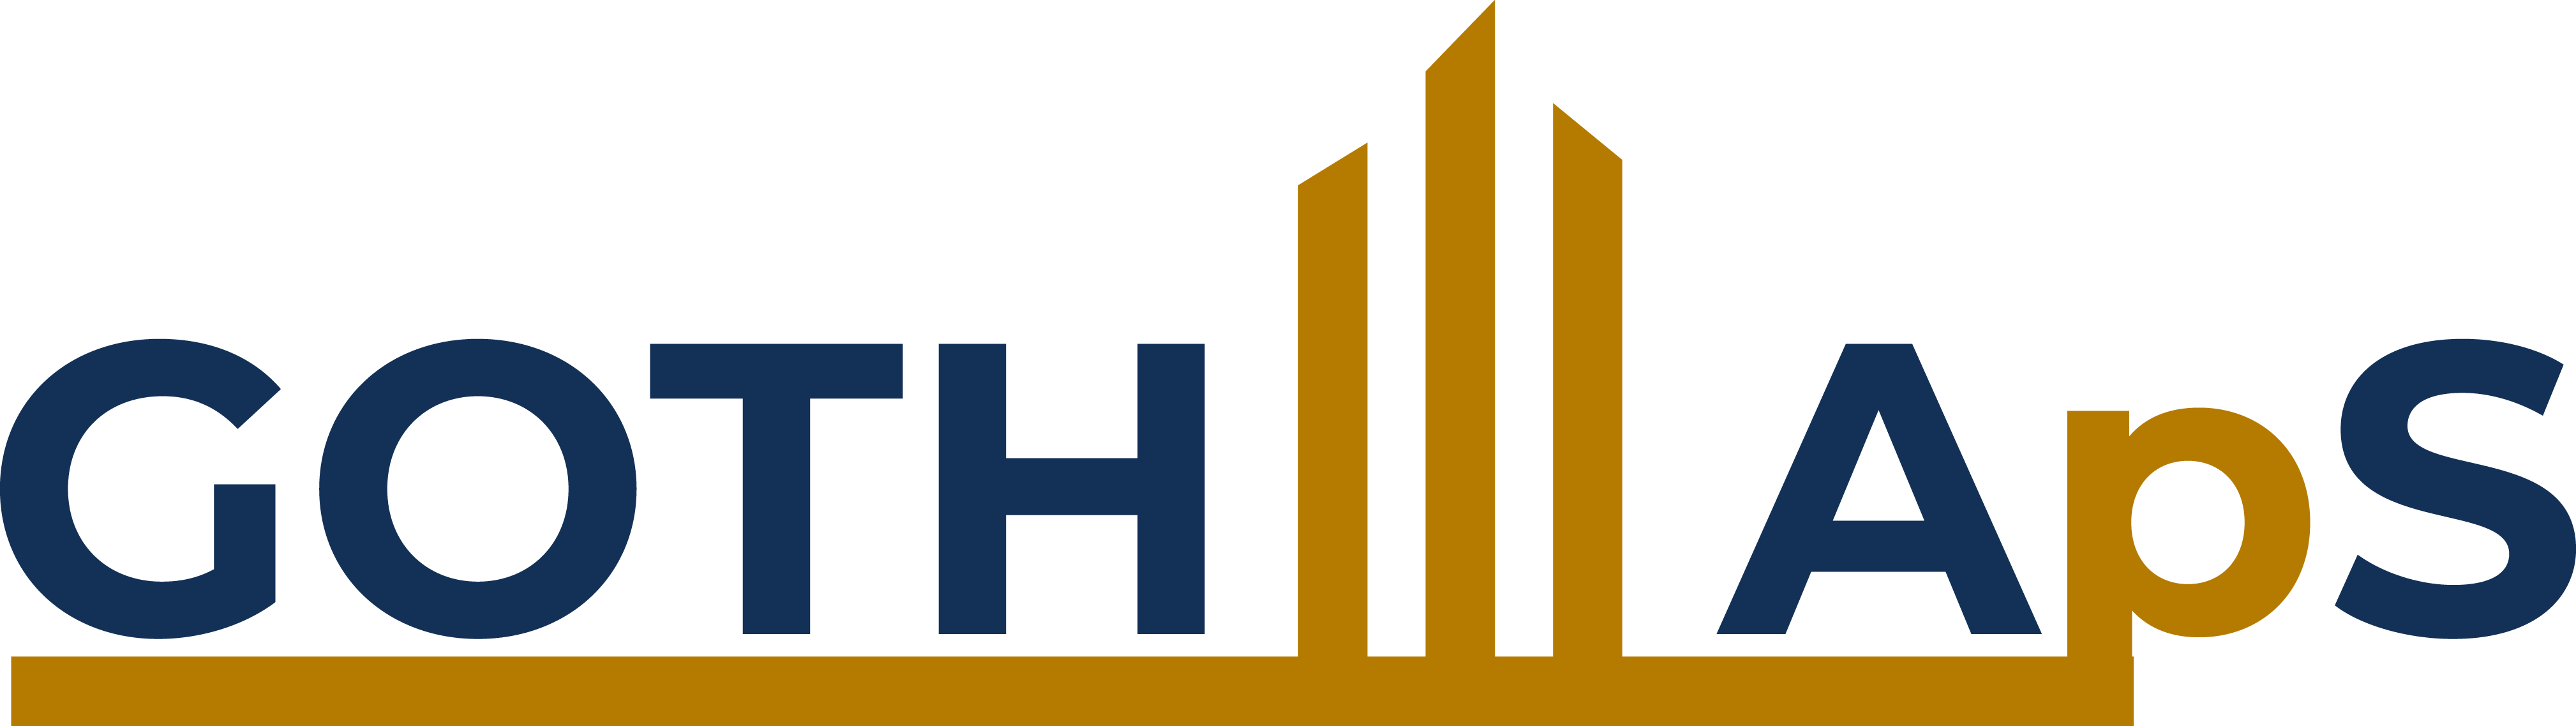 GOTH-ejendomme-logo